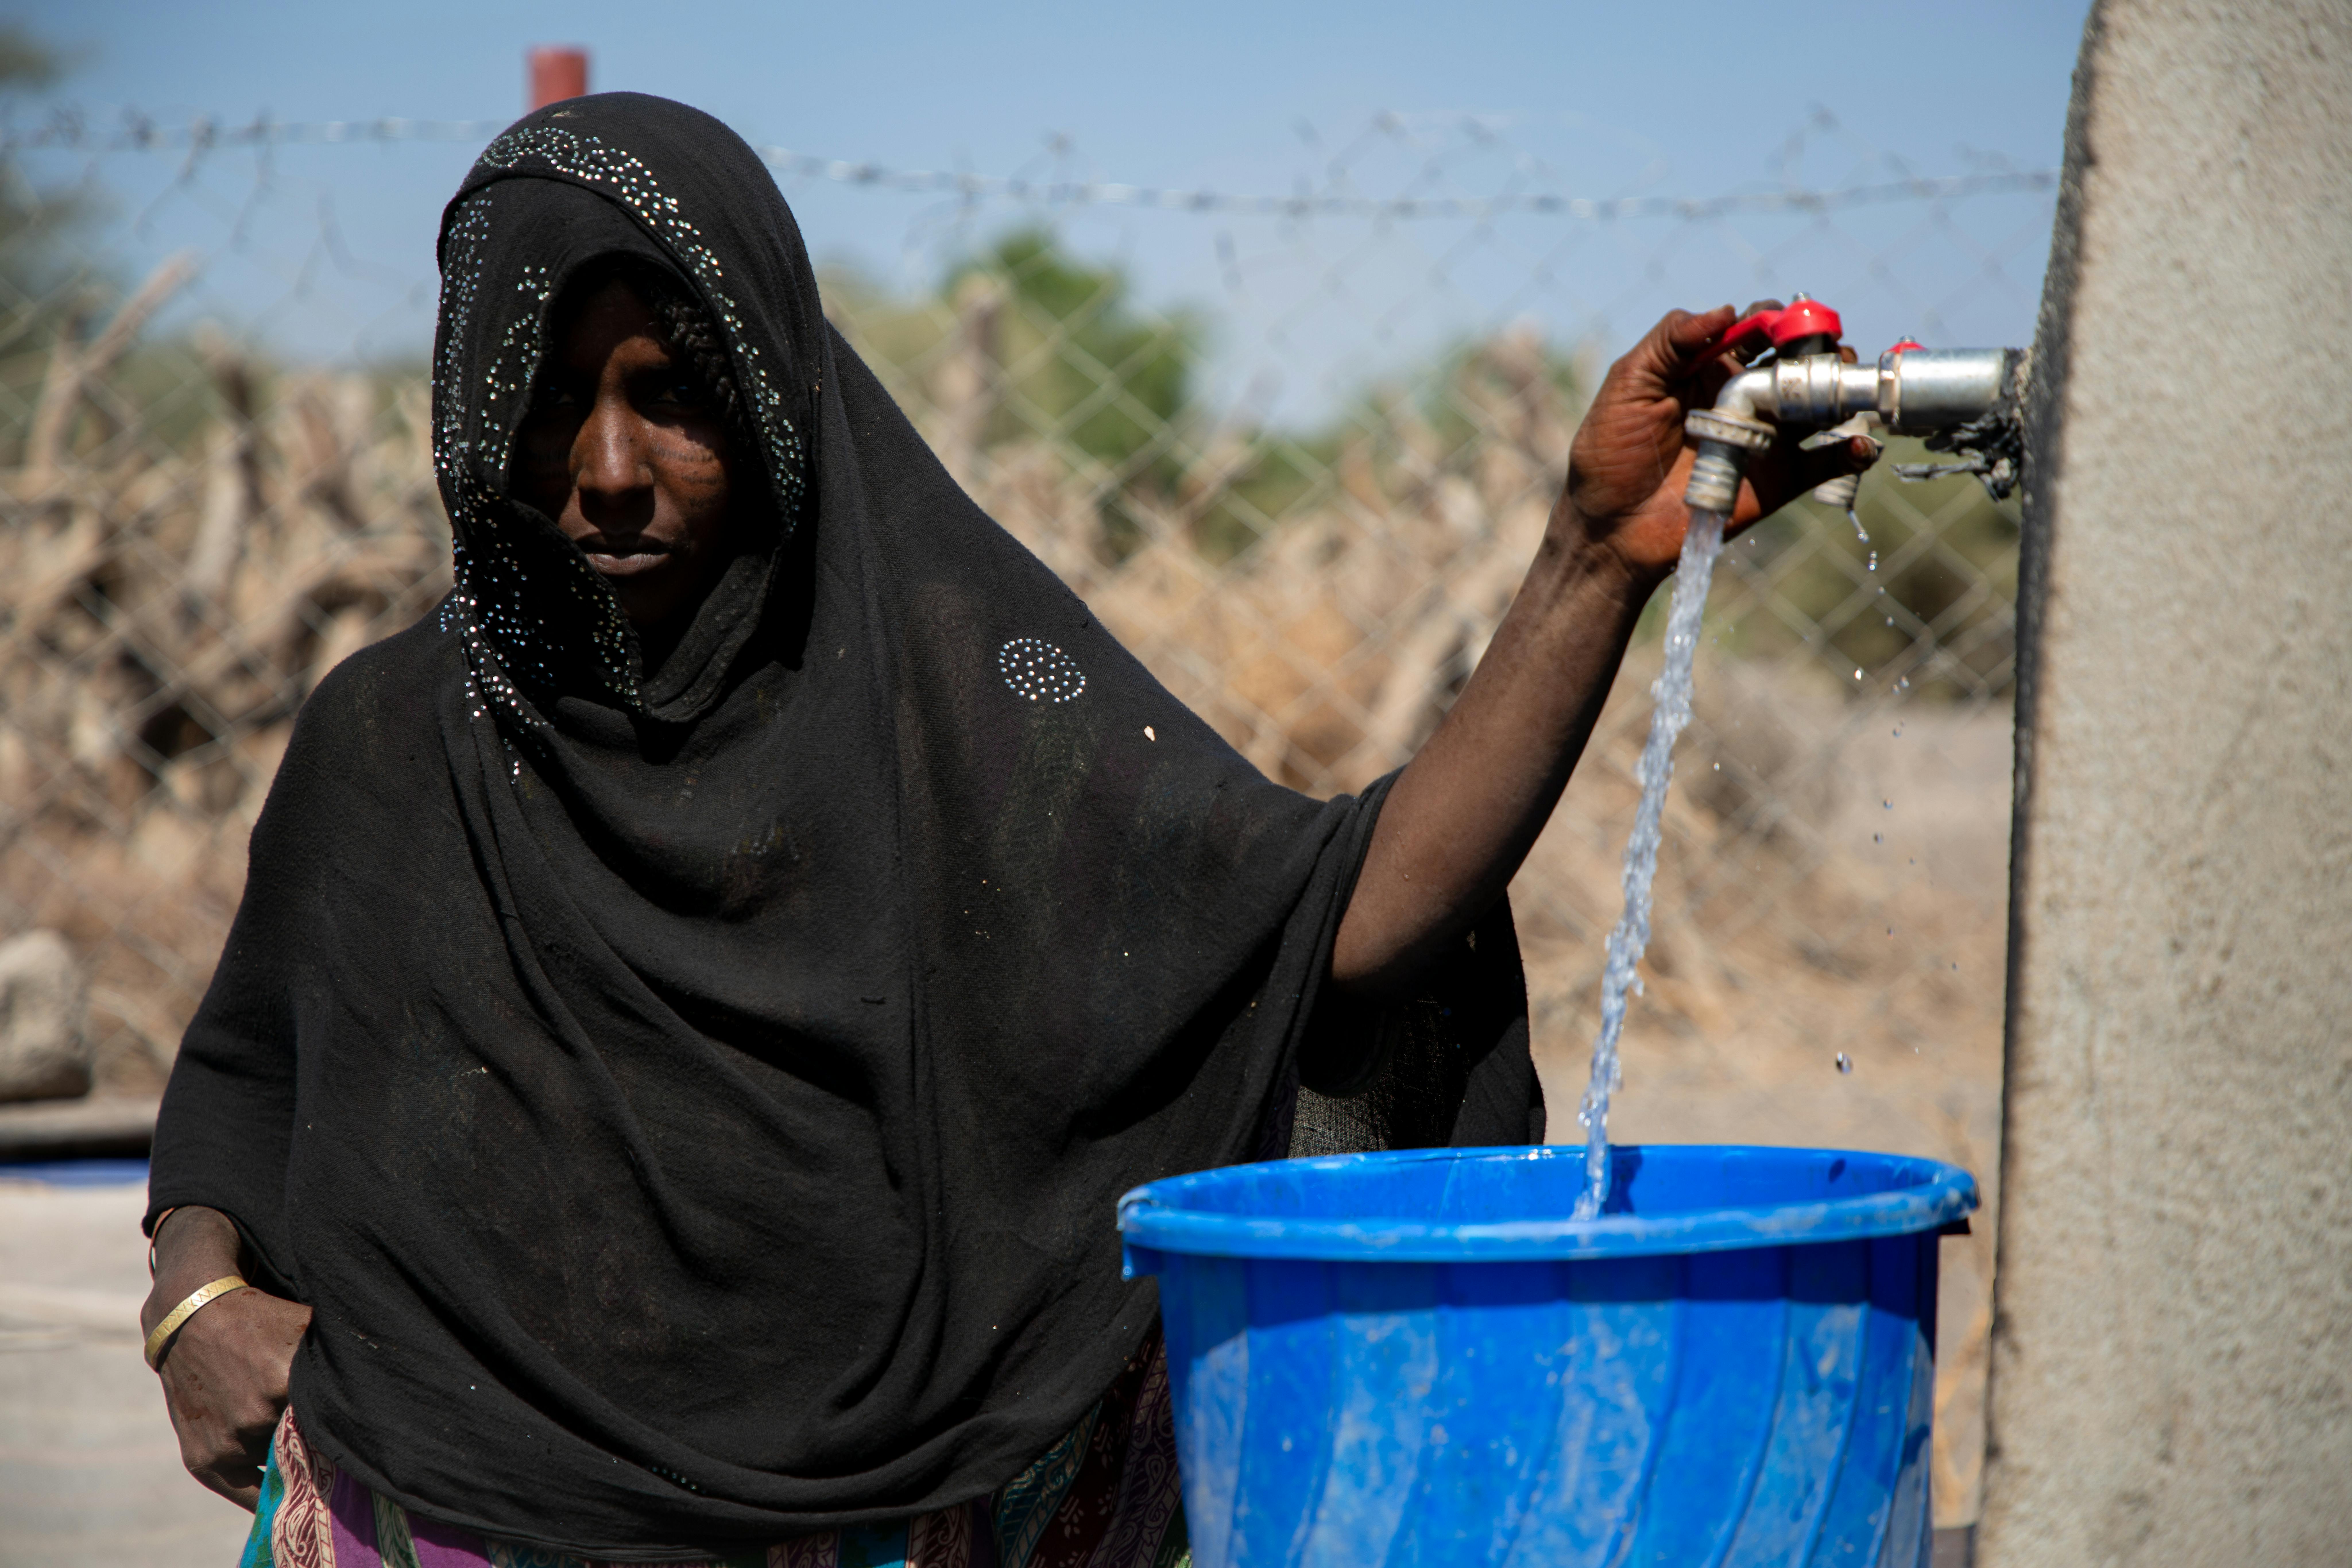 Fatuma sta prendendo l'acqua dal punto di approvigionamento di Kori Fenti, in Etiopia: nella stagione secca è l'unico disponibile per diversi distretti della zona